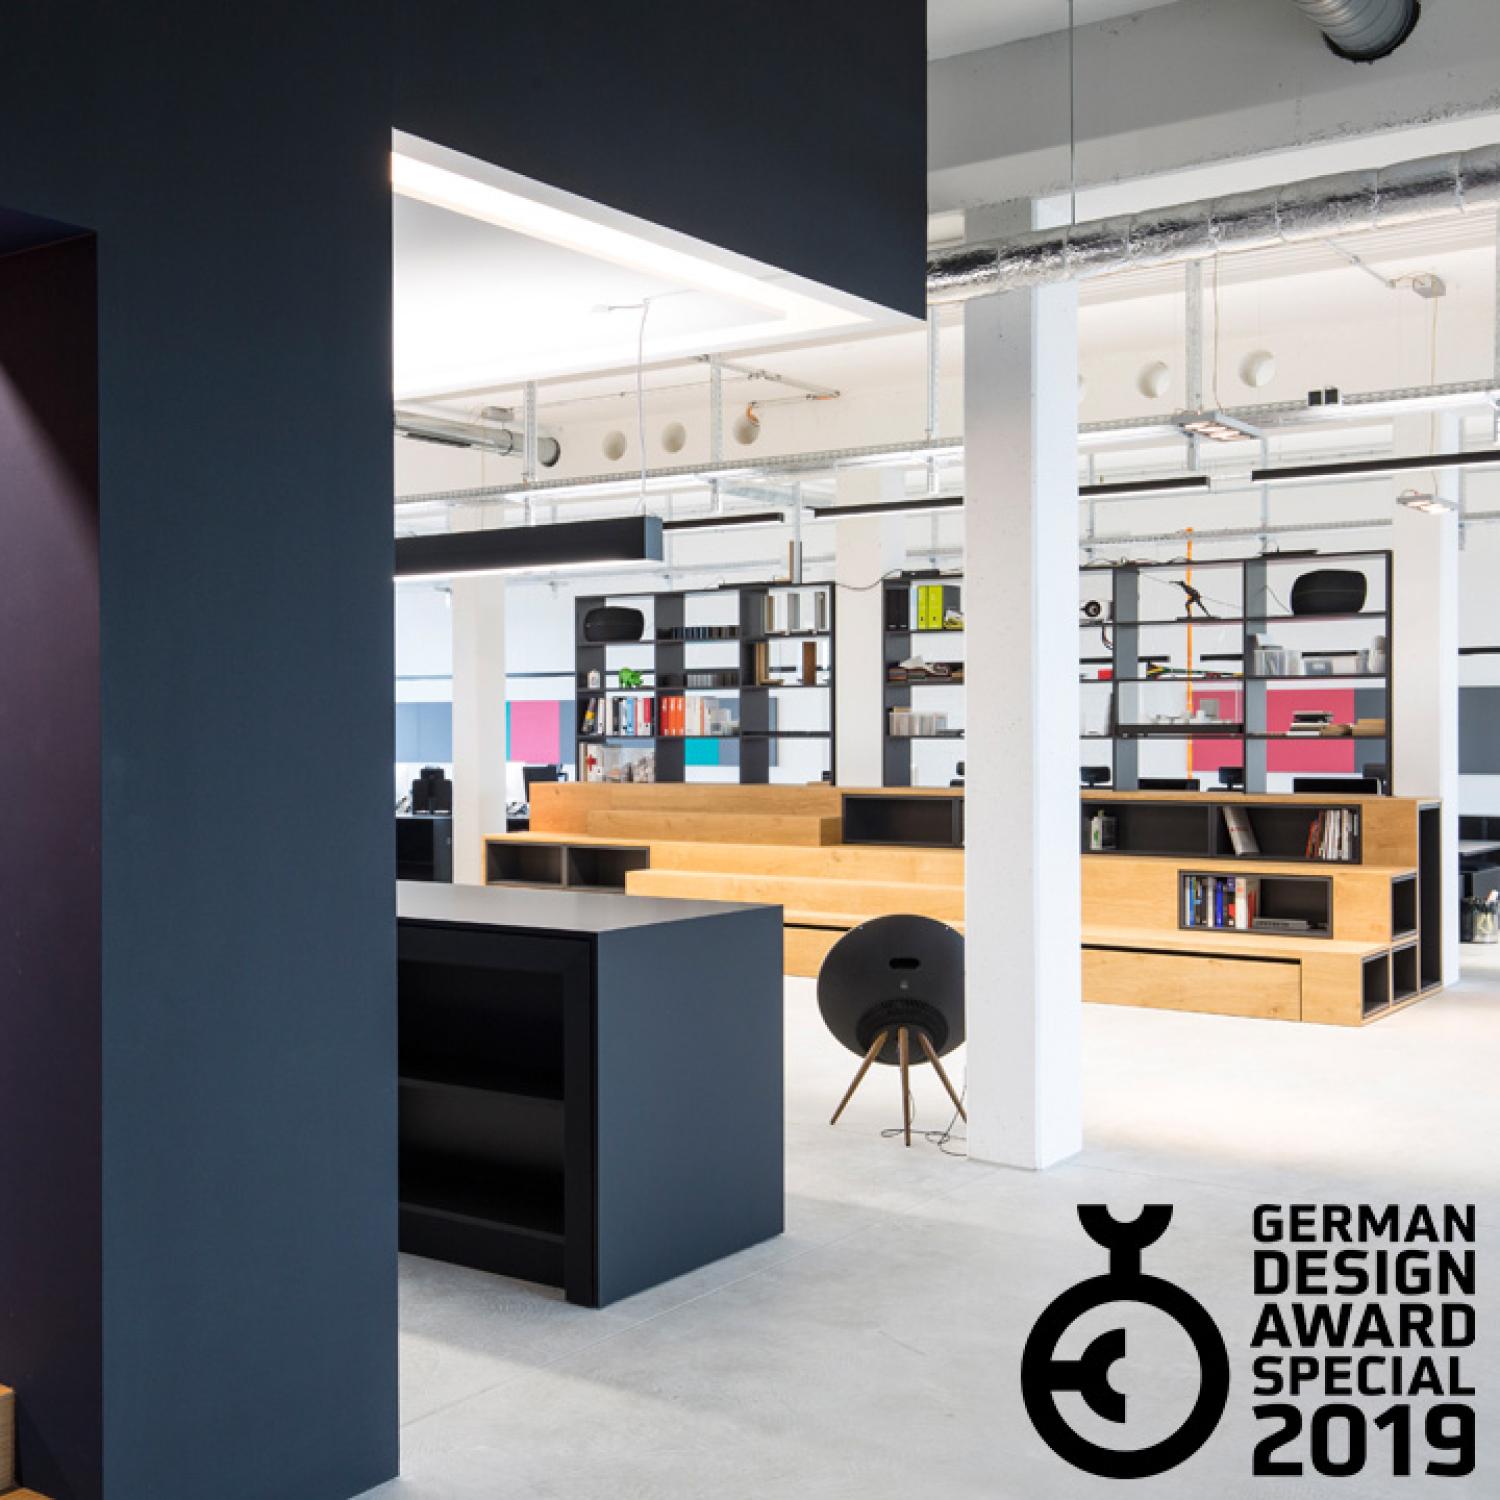 CSMM office in Munich designed by CSMM – German Design Award